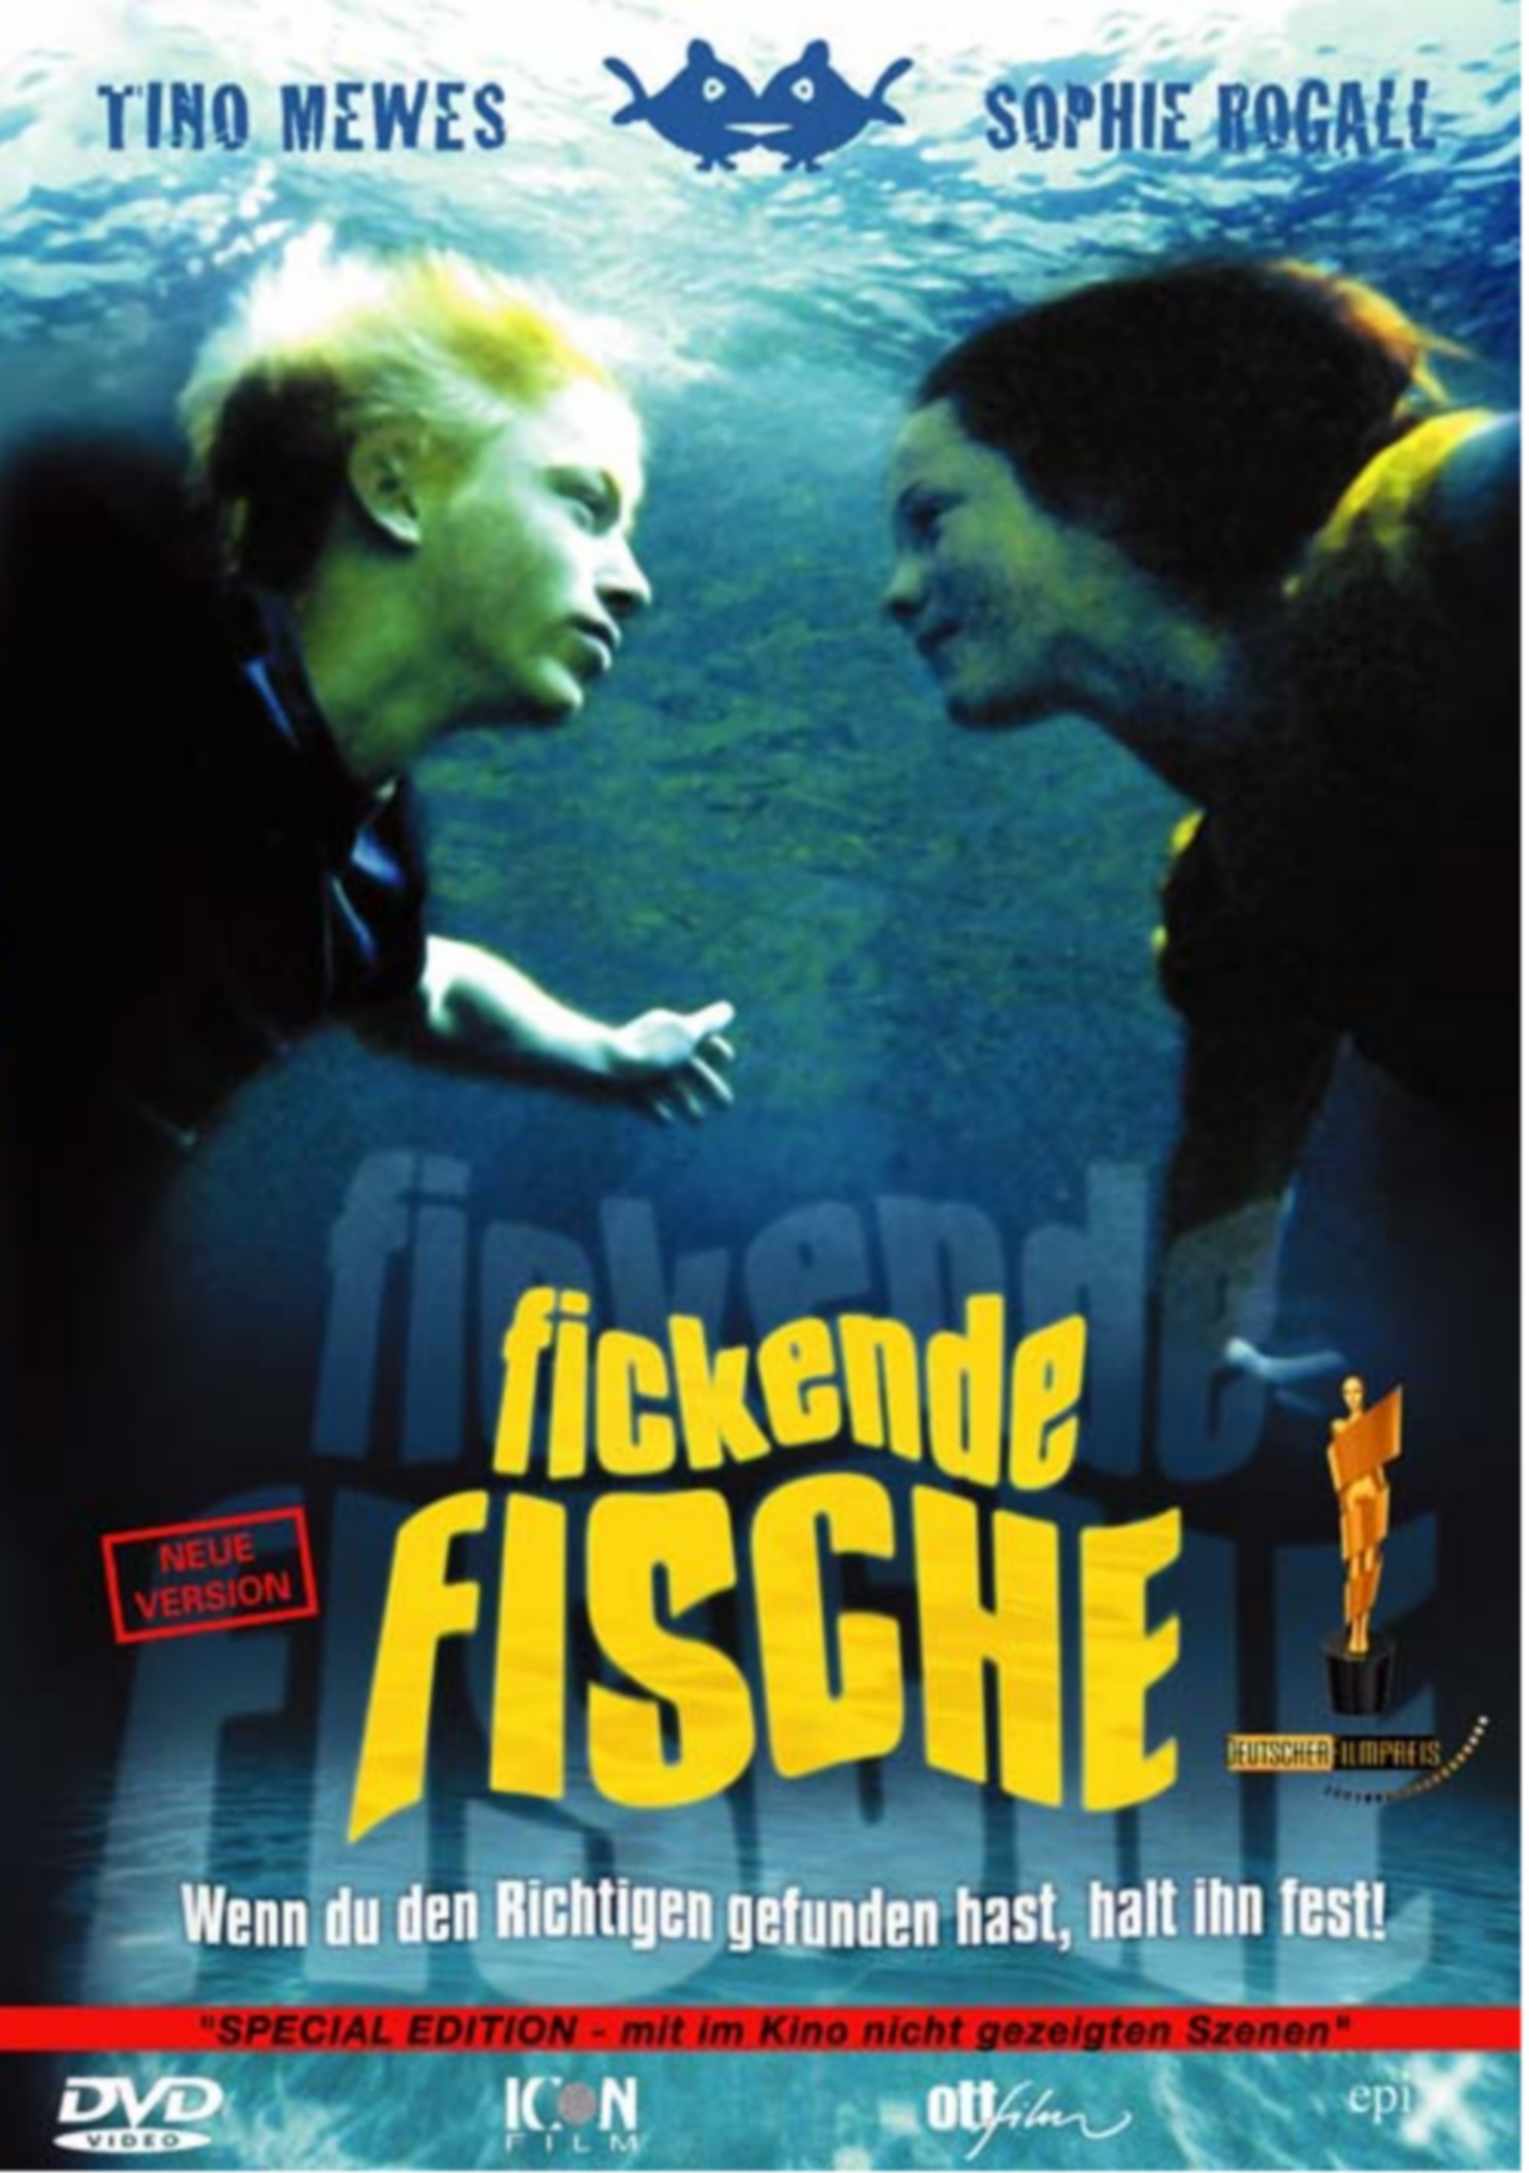 FICKENDE FISCHE DVD-Cover Neue Version front